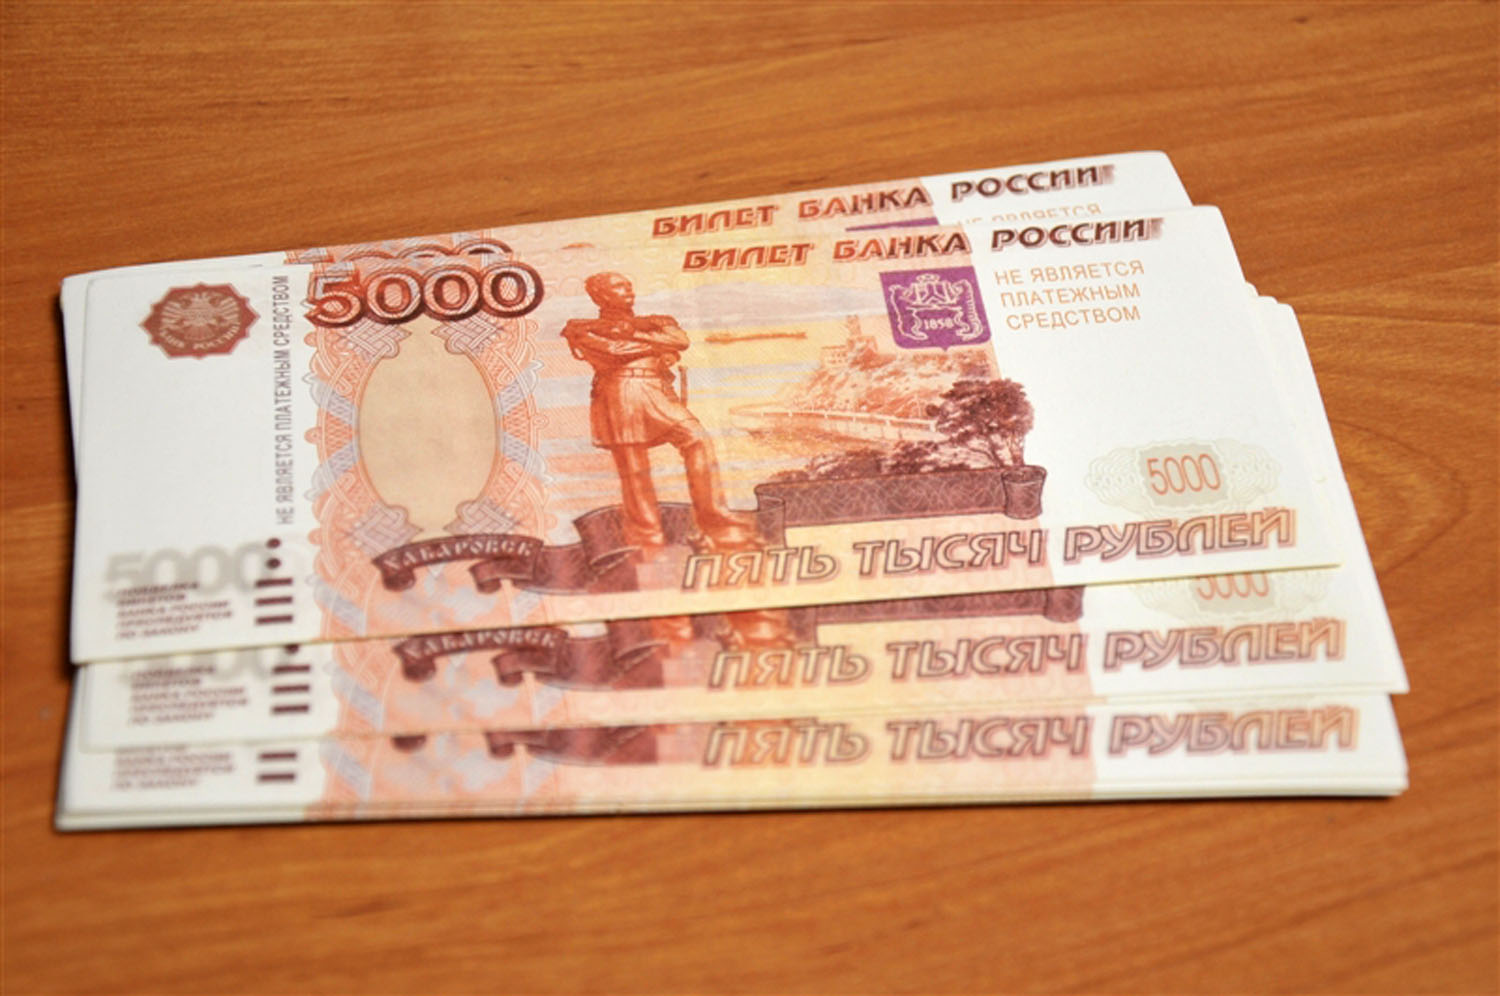 Возьму 40000 рублей на год. Деньги 5000 рублей. 15000 Рублей. Деньги 15000 рублей. 20 Тысяч рублей на столе.